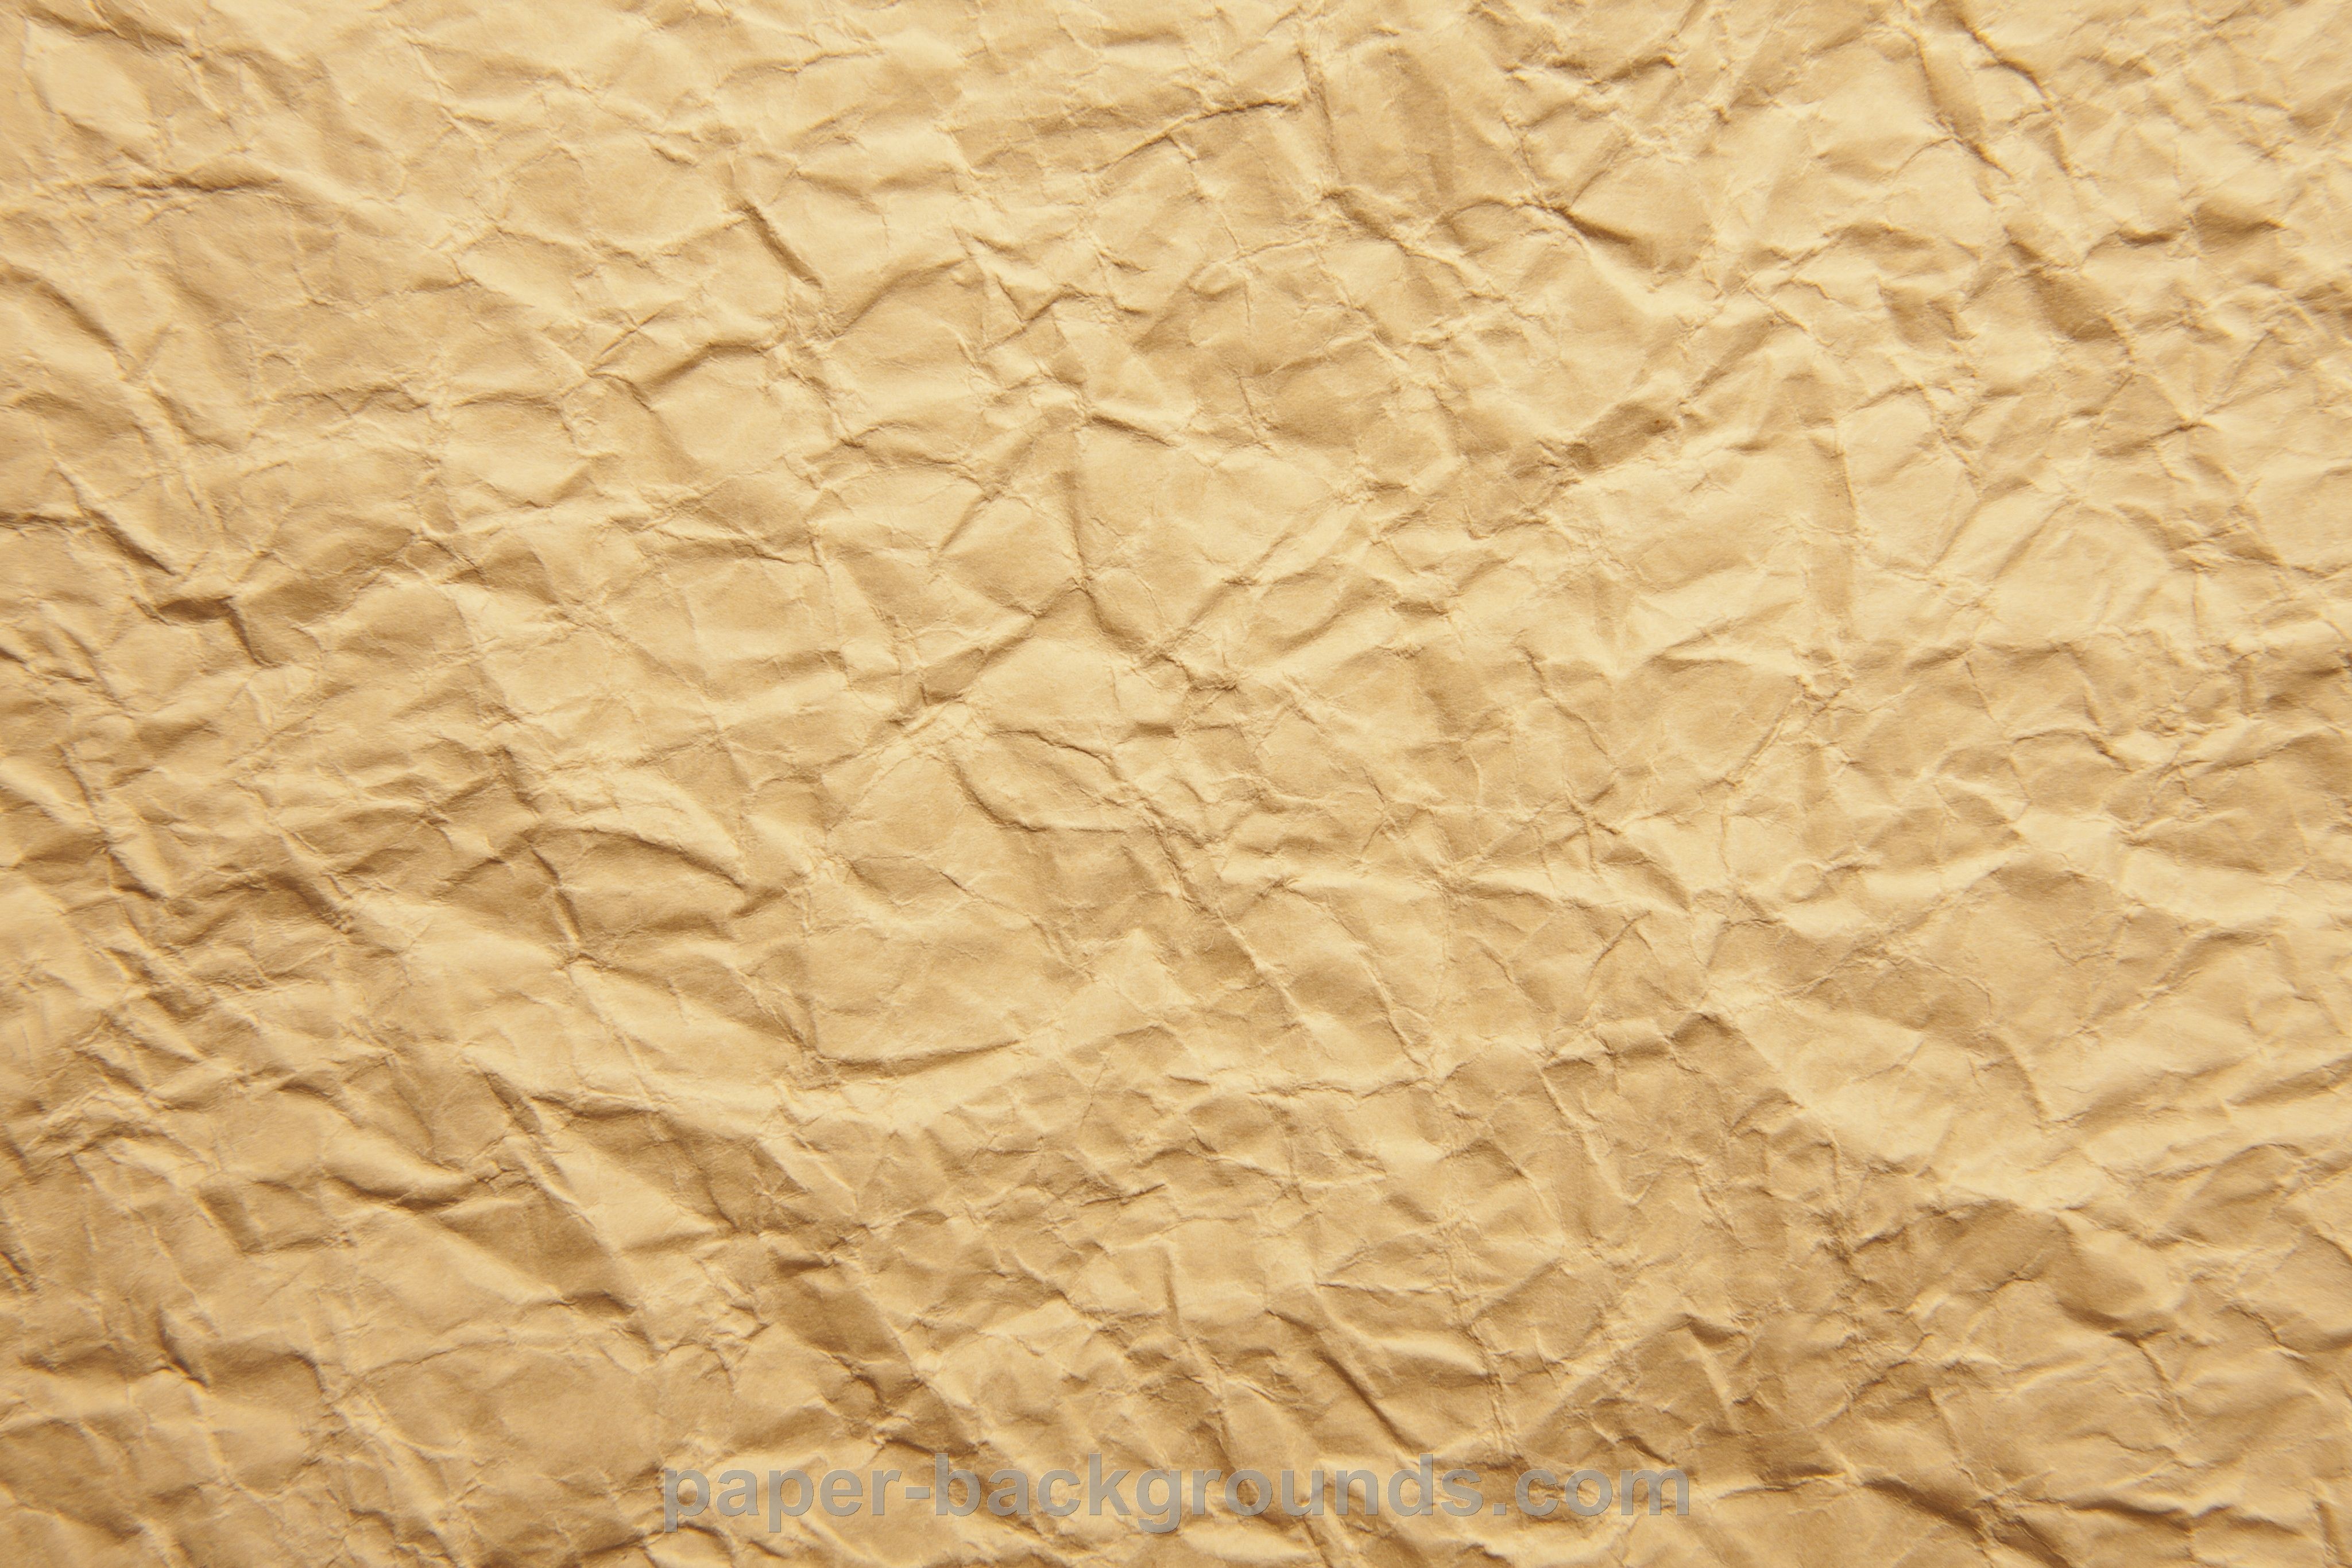 Crumple Paper Texture. Brown paper textures, Vintage paper background texture, Crumpled paper background